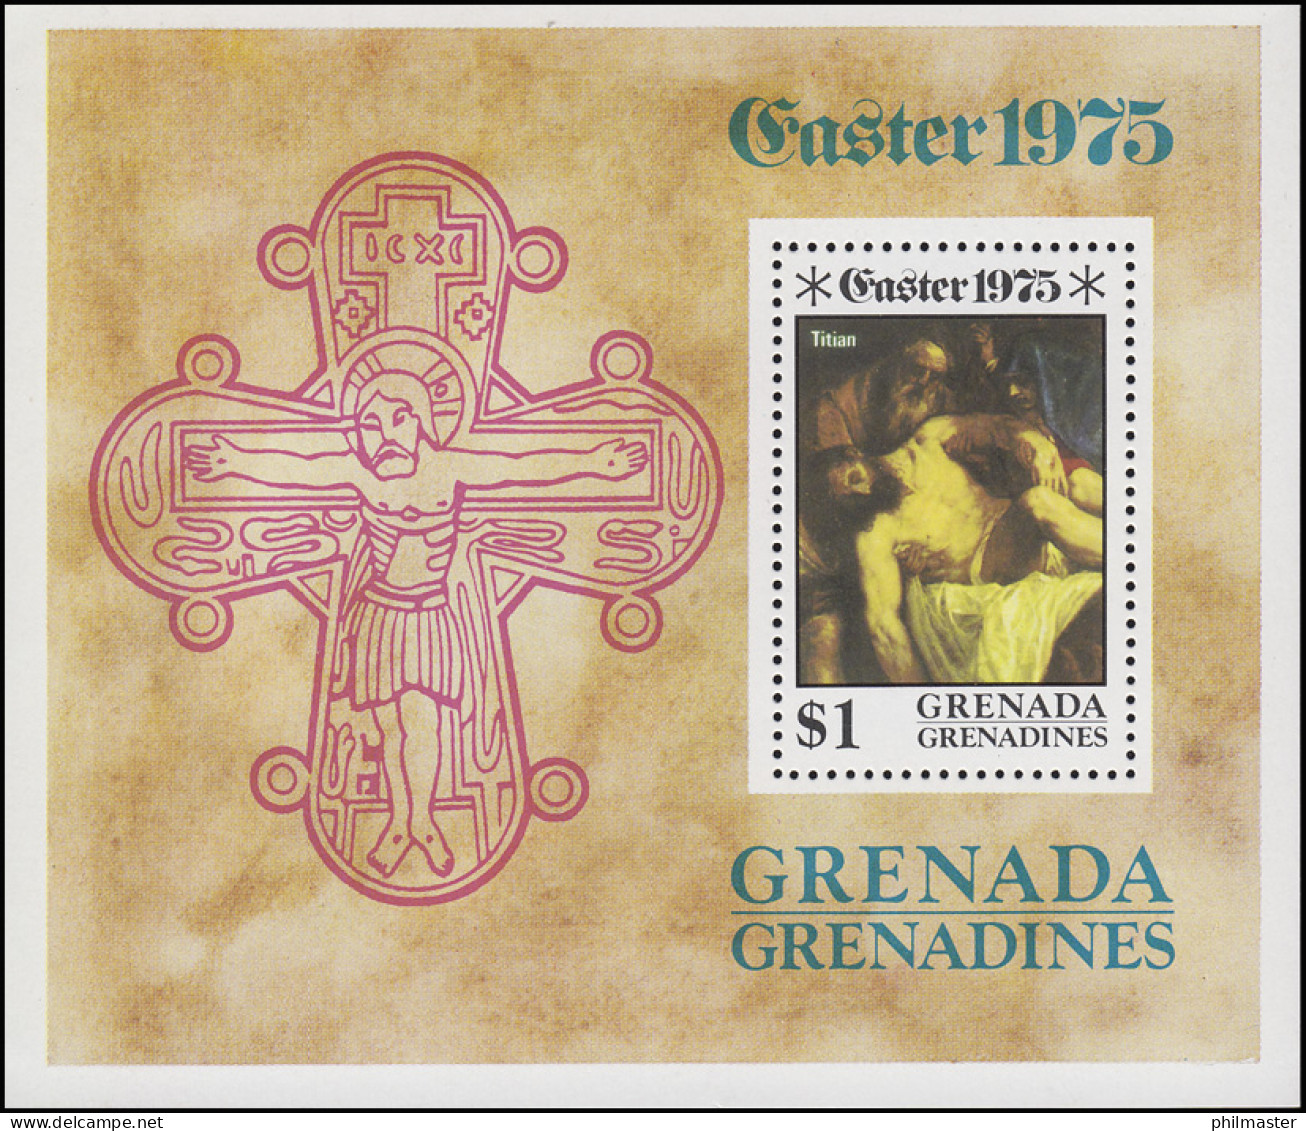 Grenadines: Ostern Easter - Die Kreuzigung Christi 1975, Block ** - Christianity